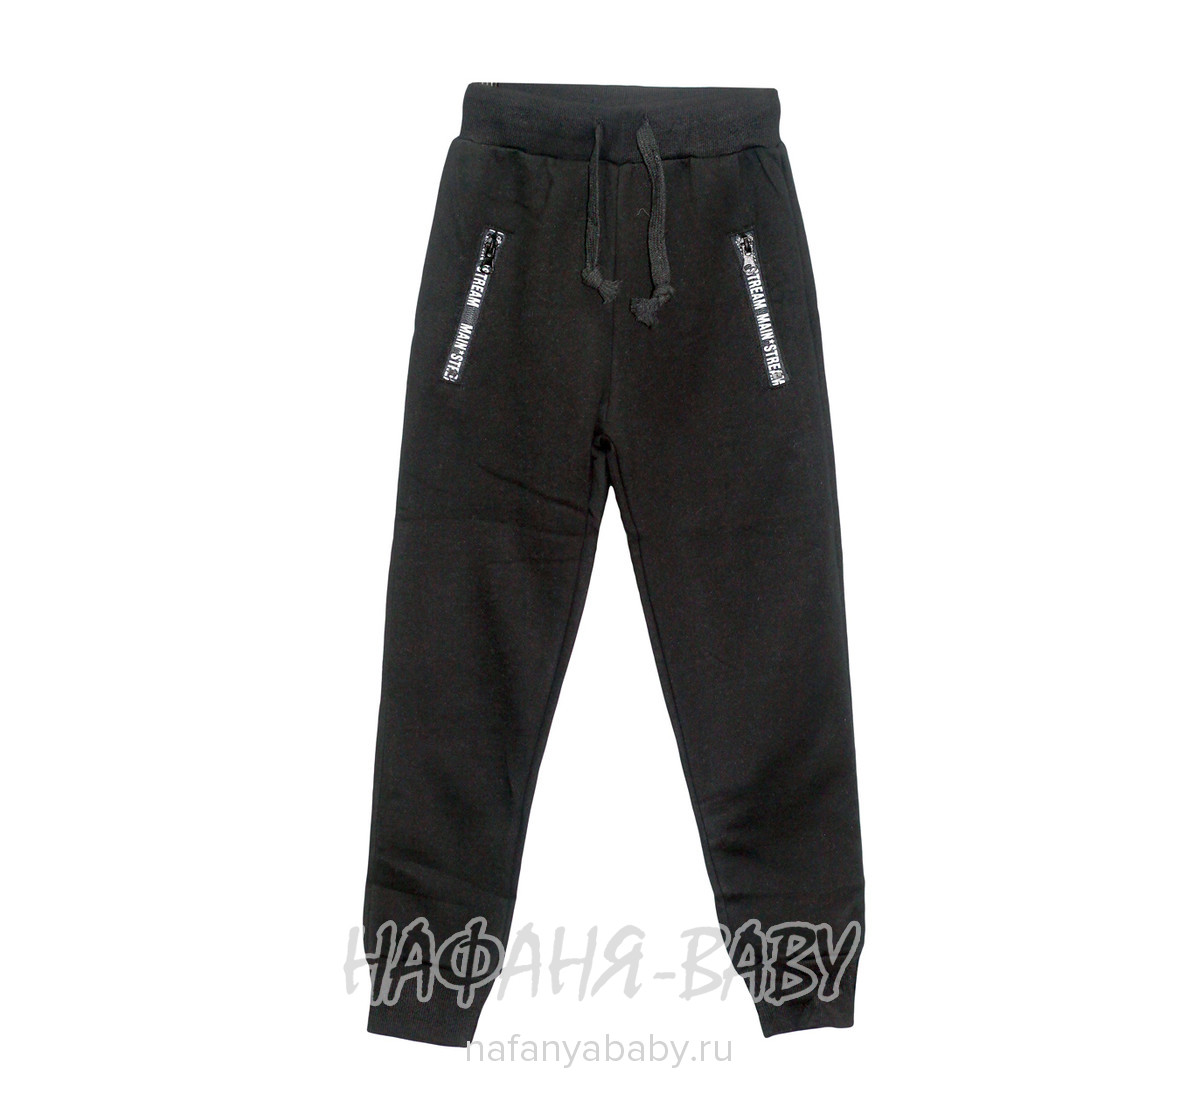 Детские брюки VIVID BASIC, купить в интернет магазине Нафаня. арт: 2095.